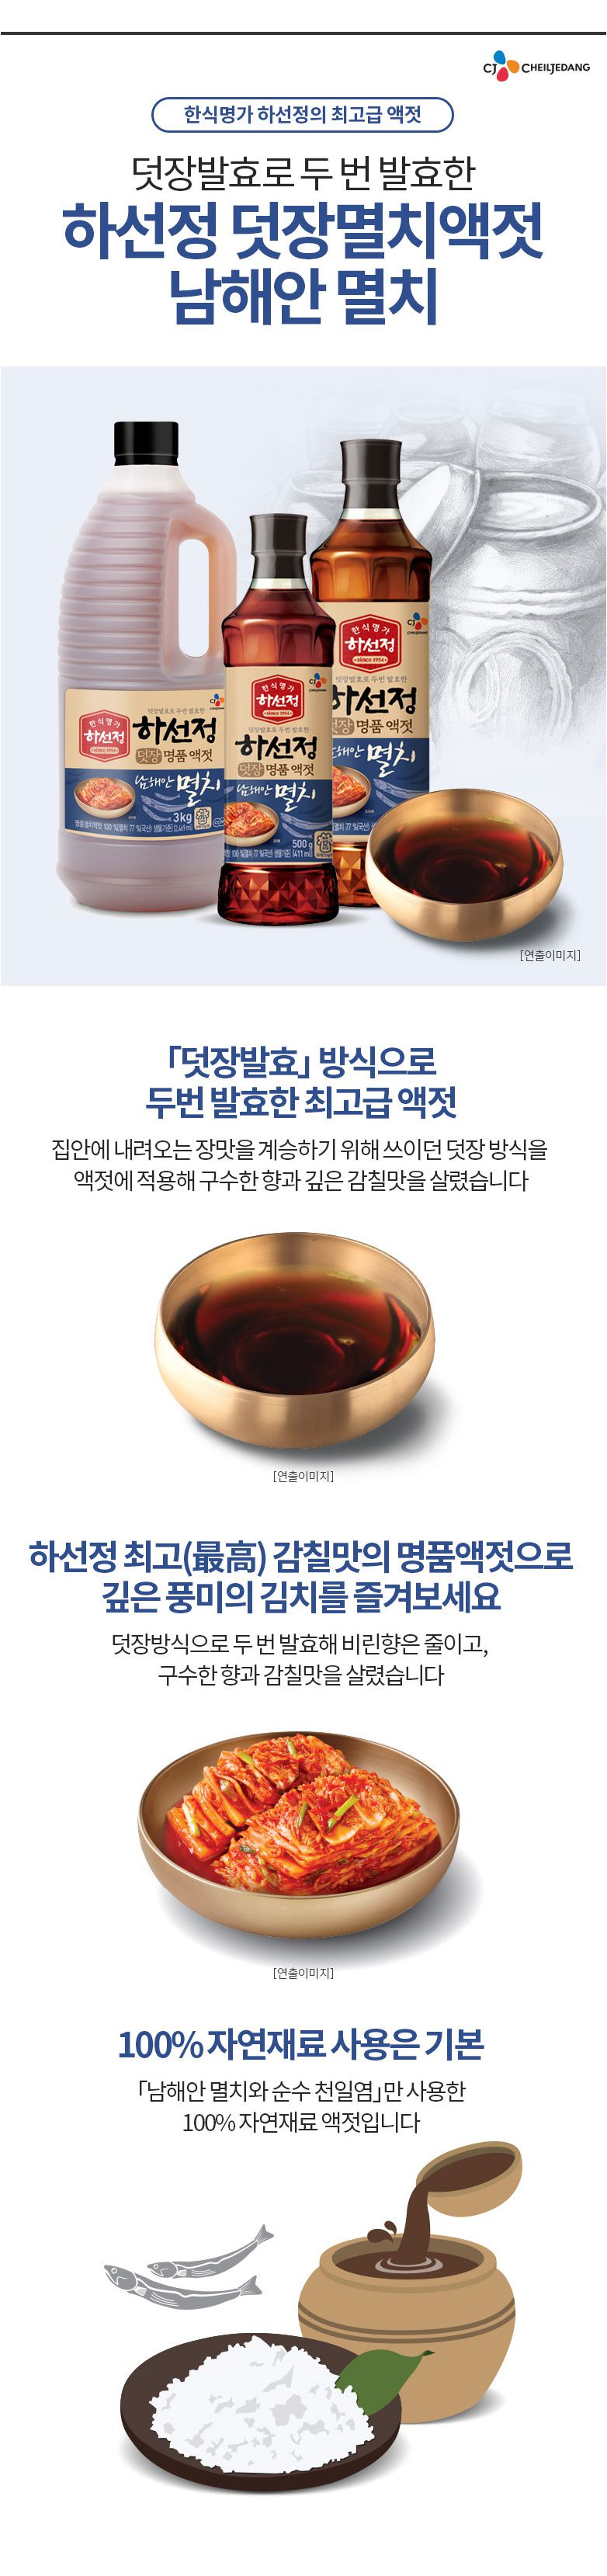 韓國食品-[CJ] 魚露 500g